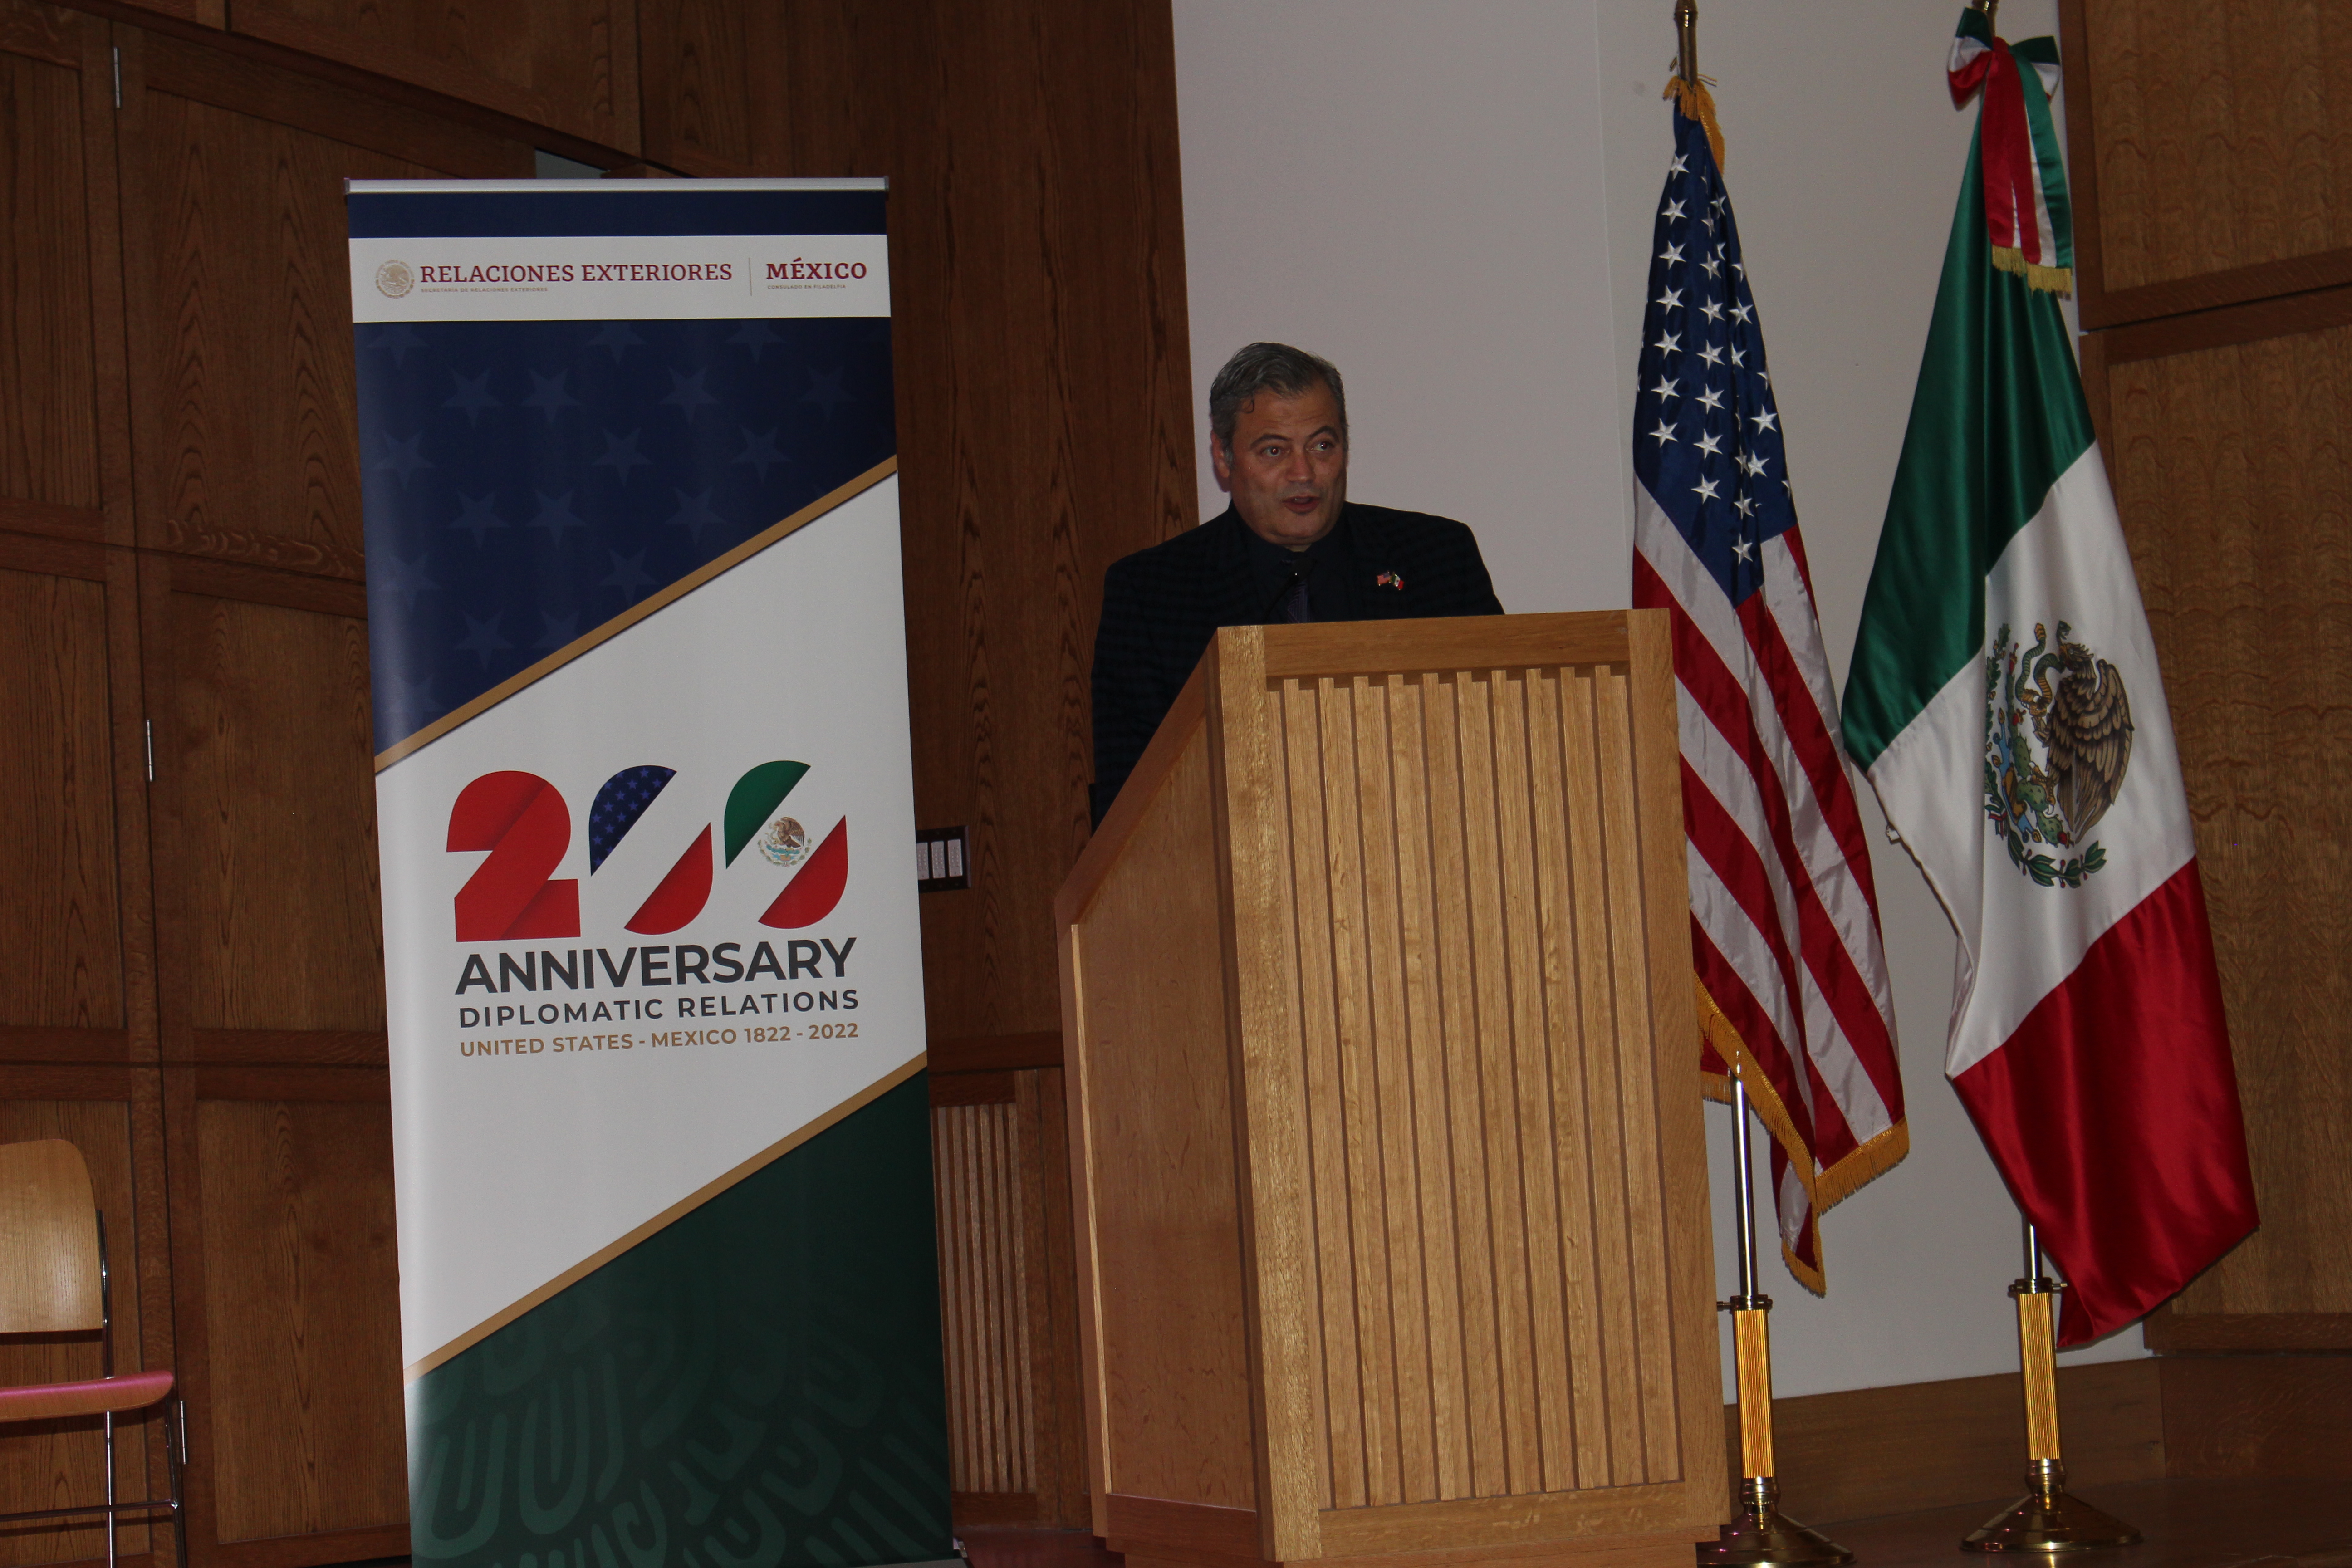 Carlos Obrador Garrido, Consul of Mexico in Philadelphia. Photo: Jensen Toussaint/AL DÍA News.